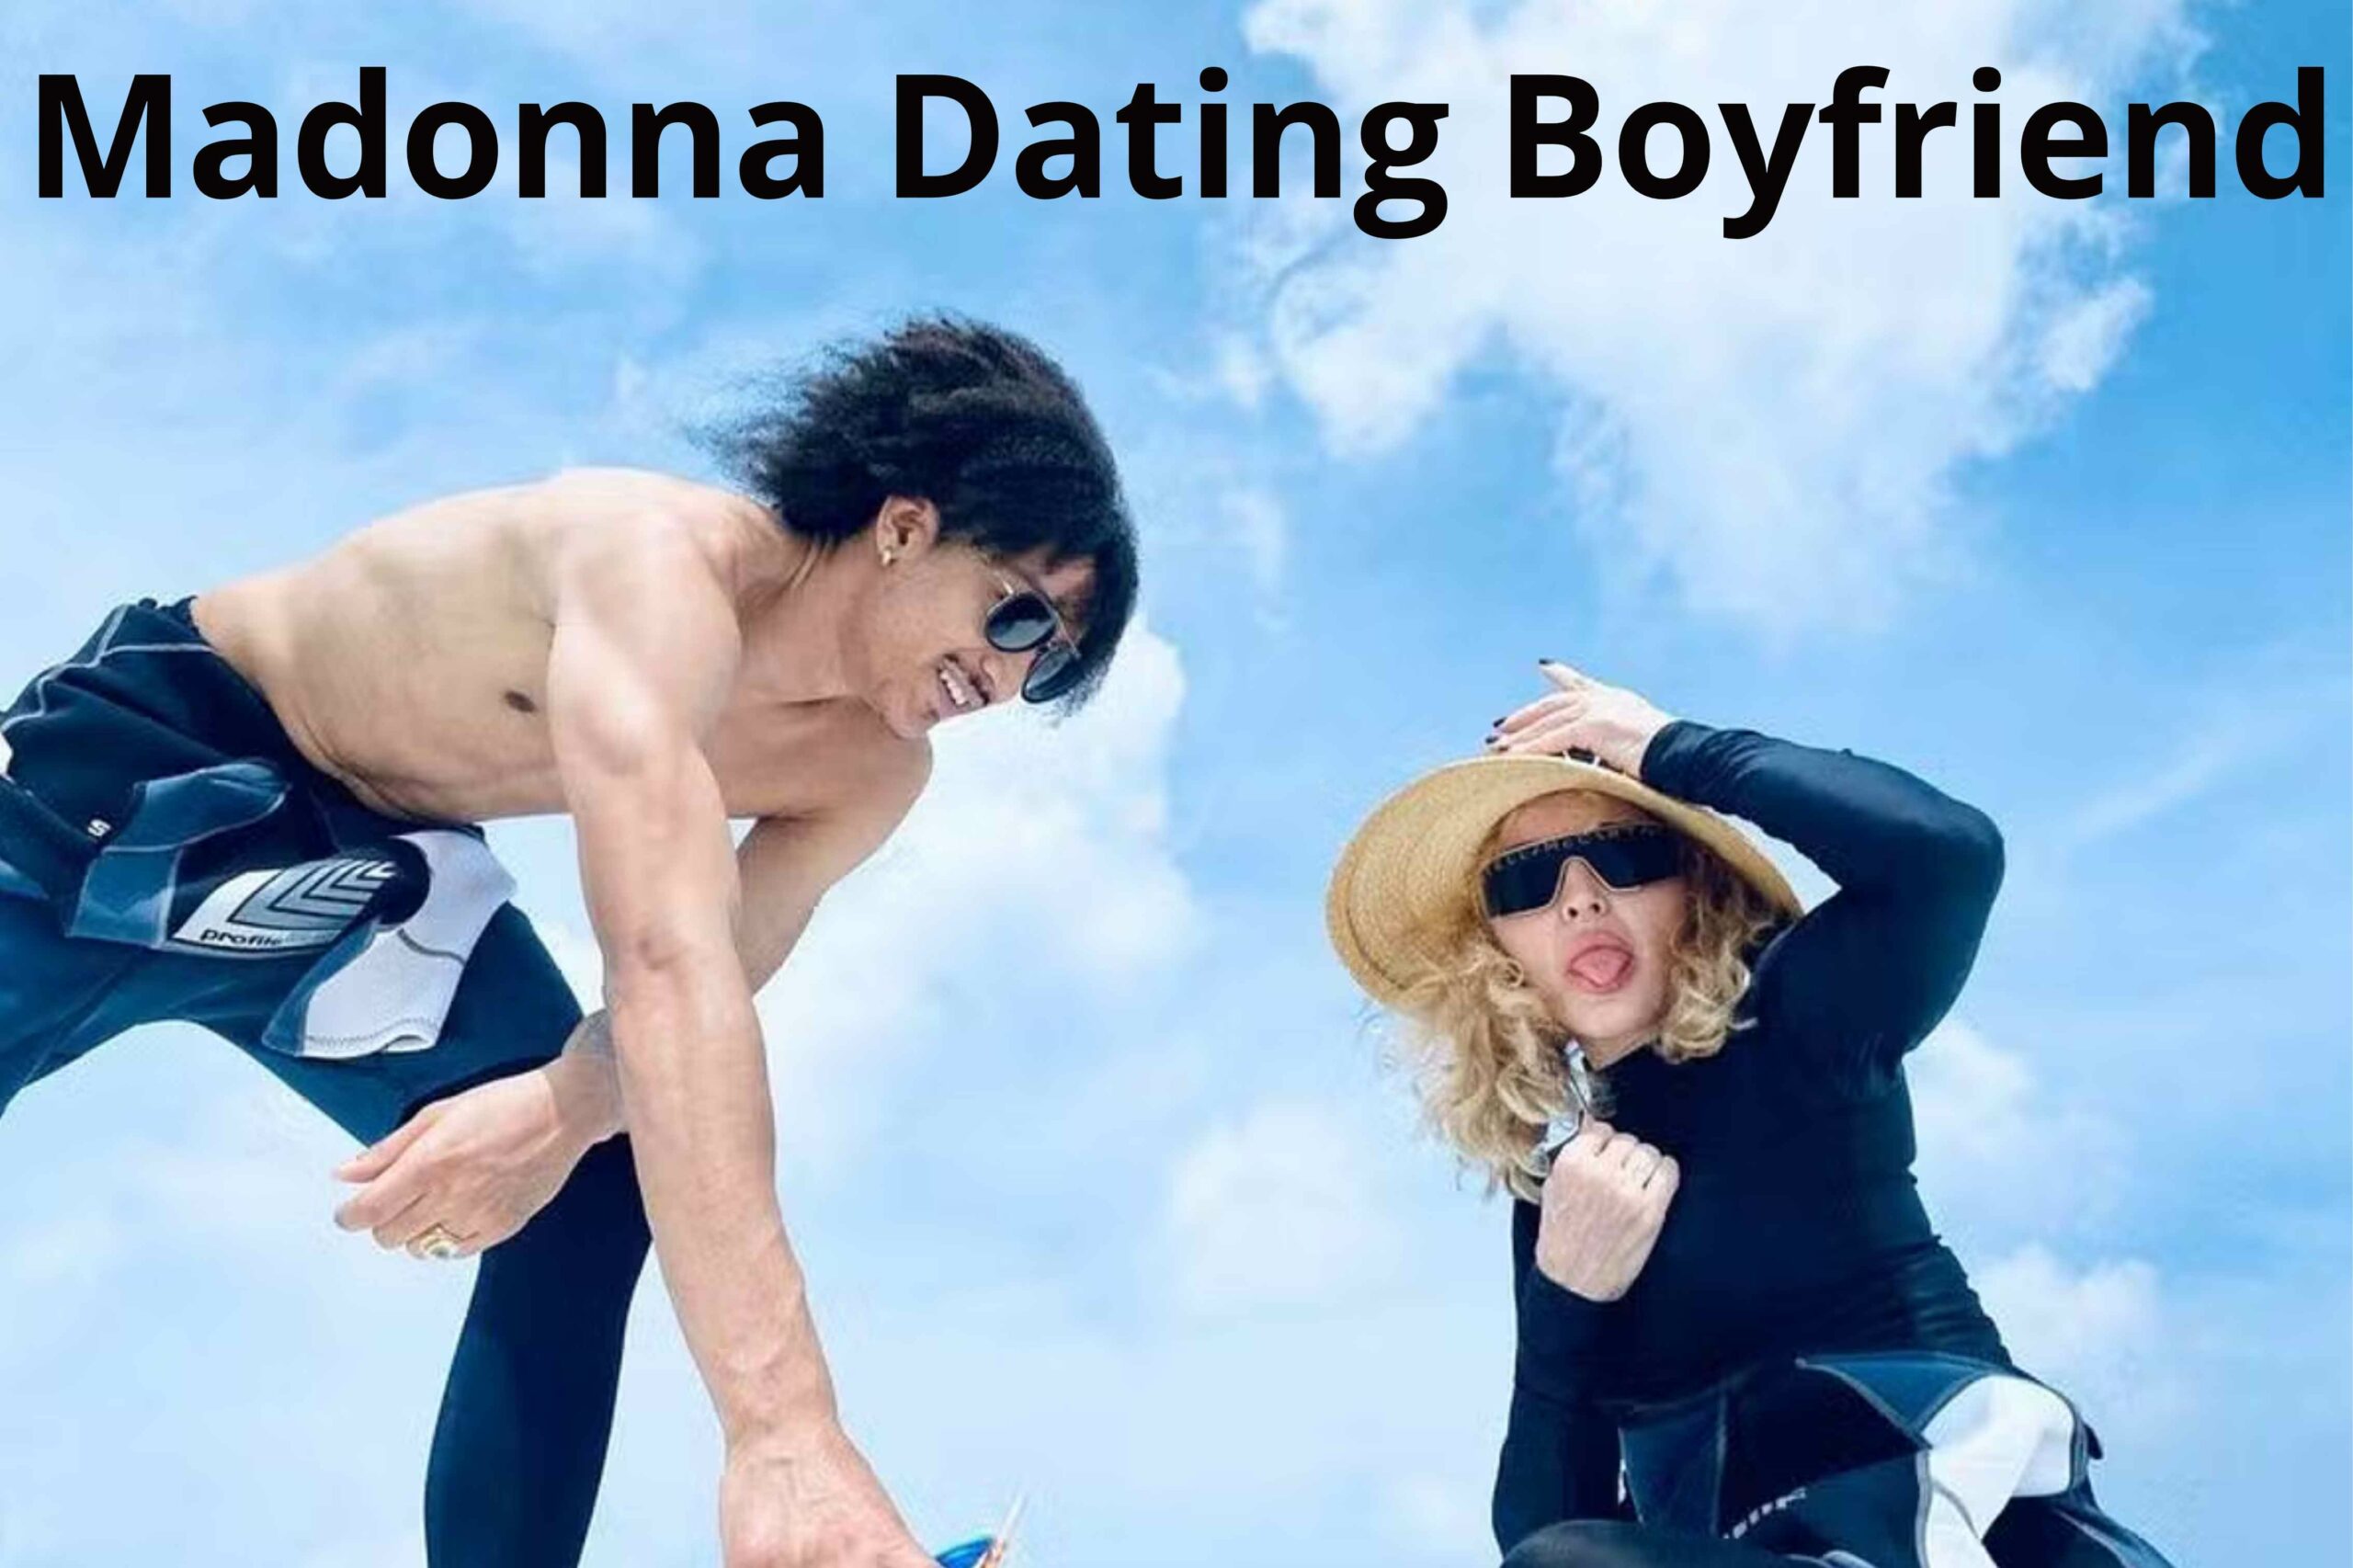 Madonna Dating Boyfriend